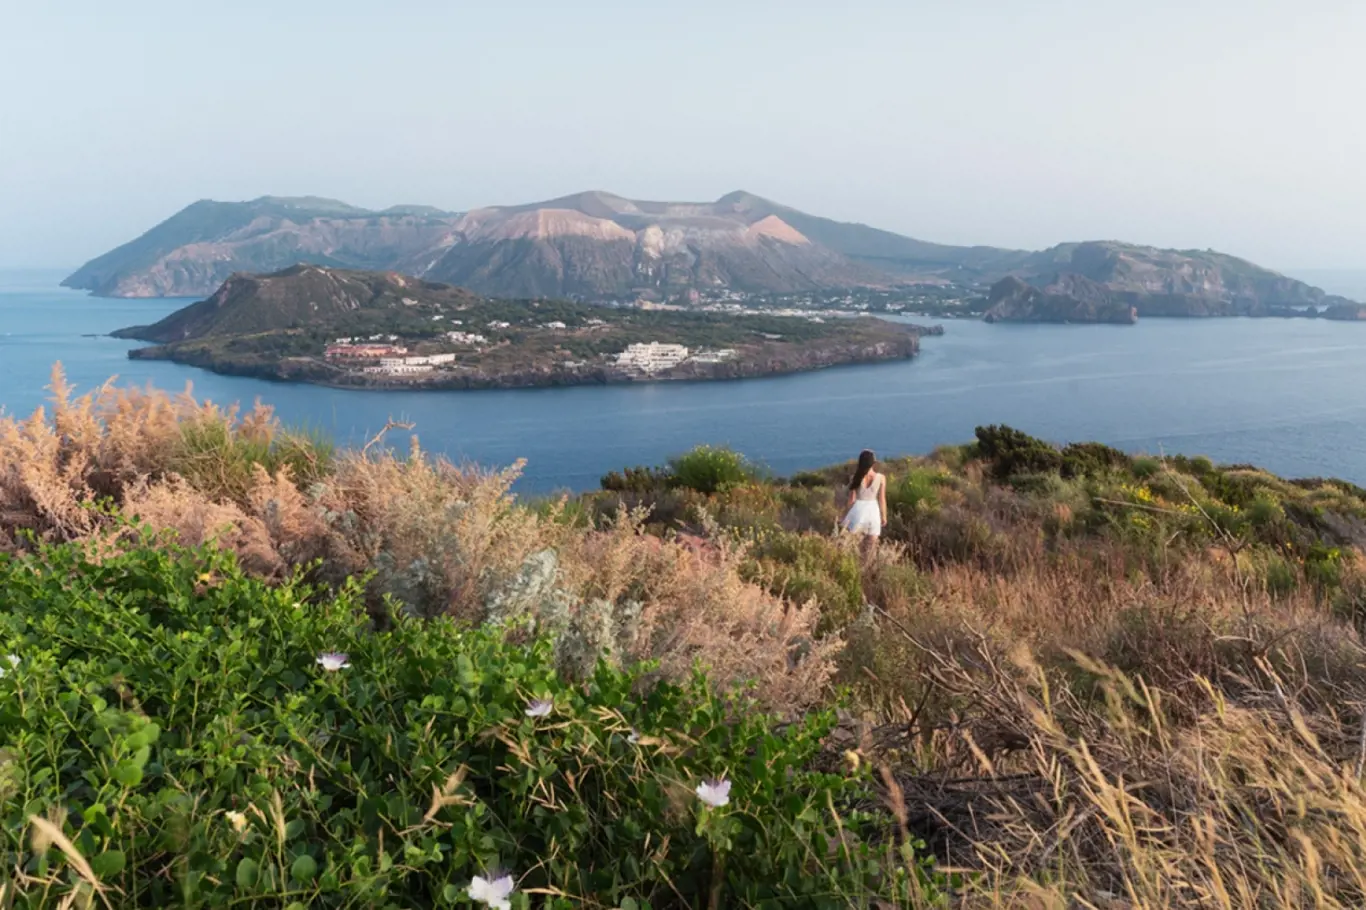 Dobrodružství - Sopečné ostrovy Stromboli & Vulcano